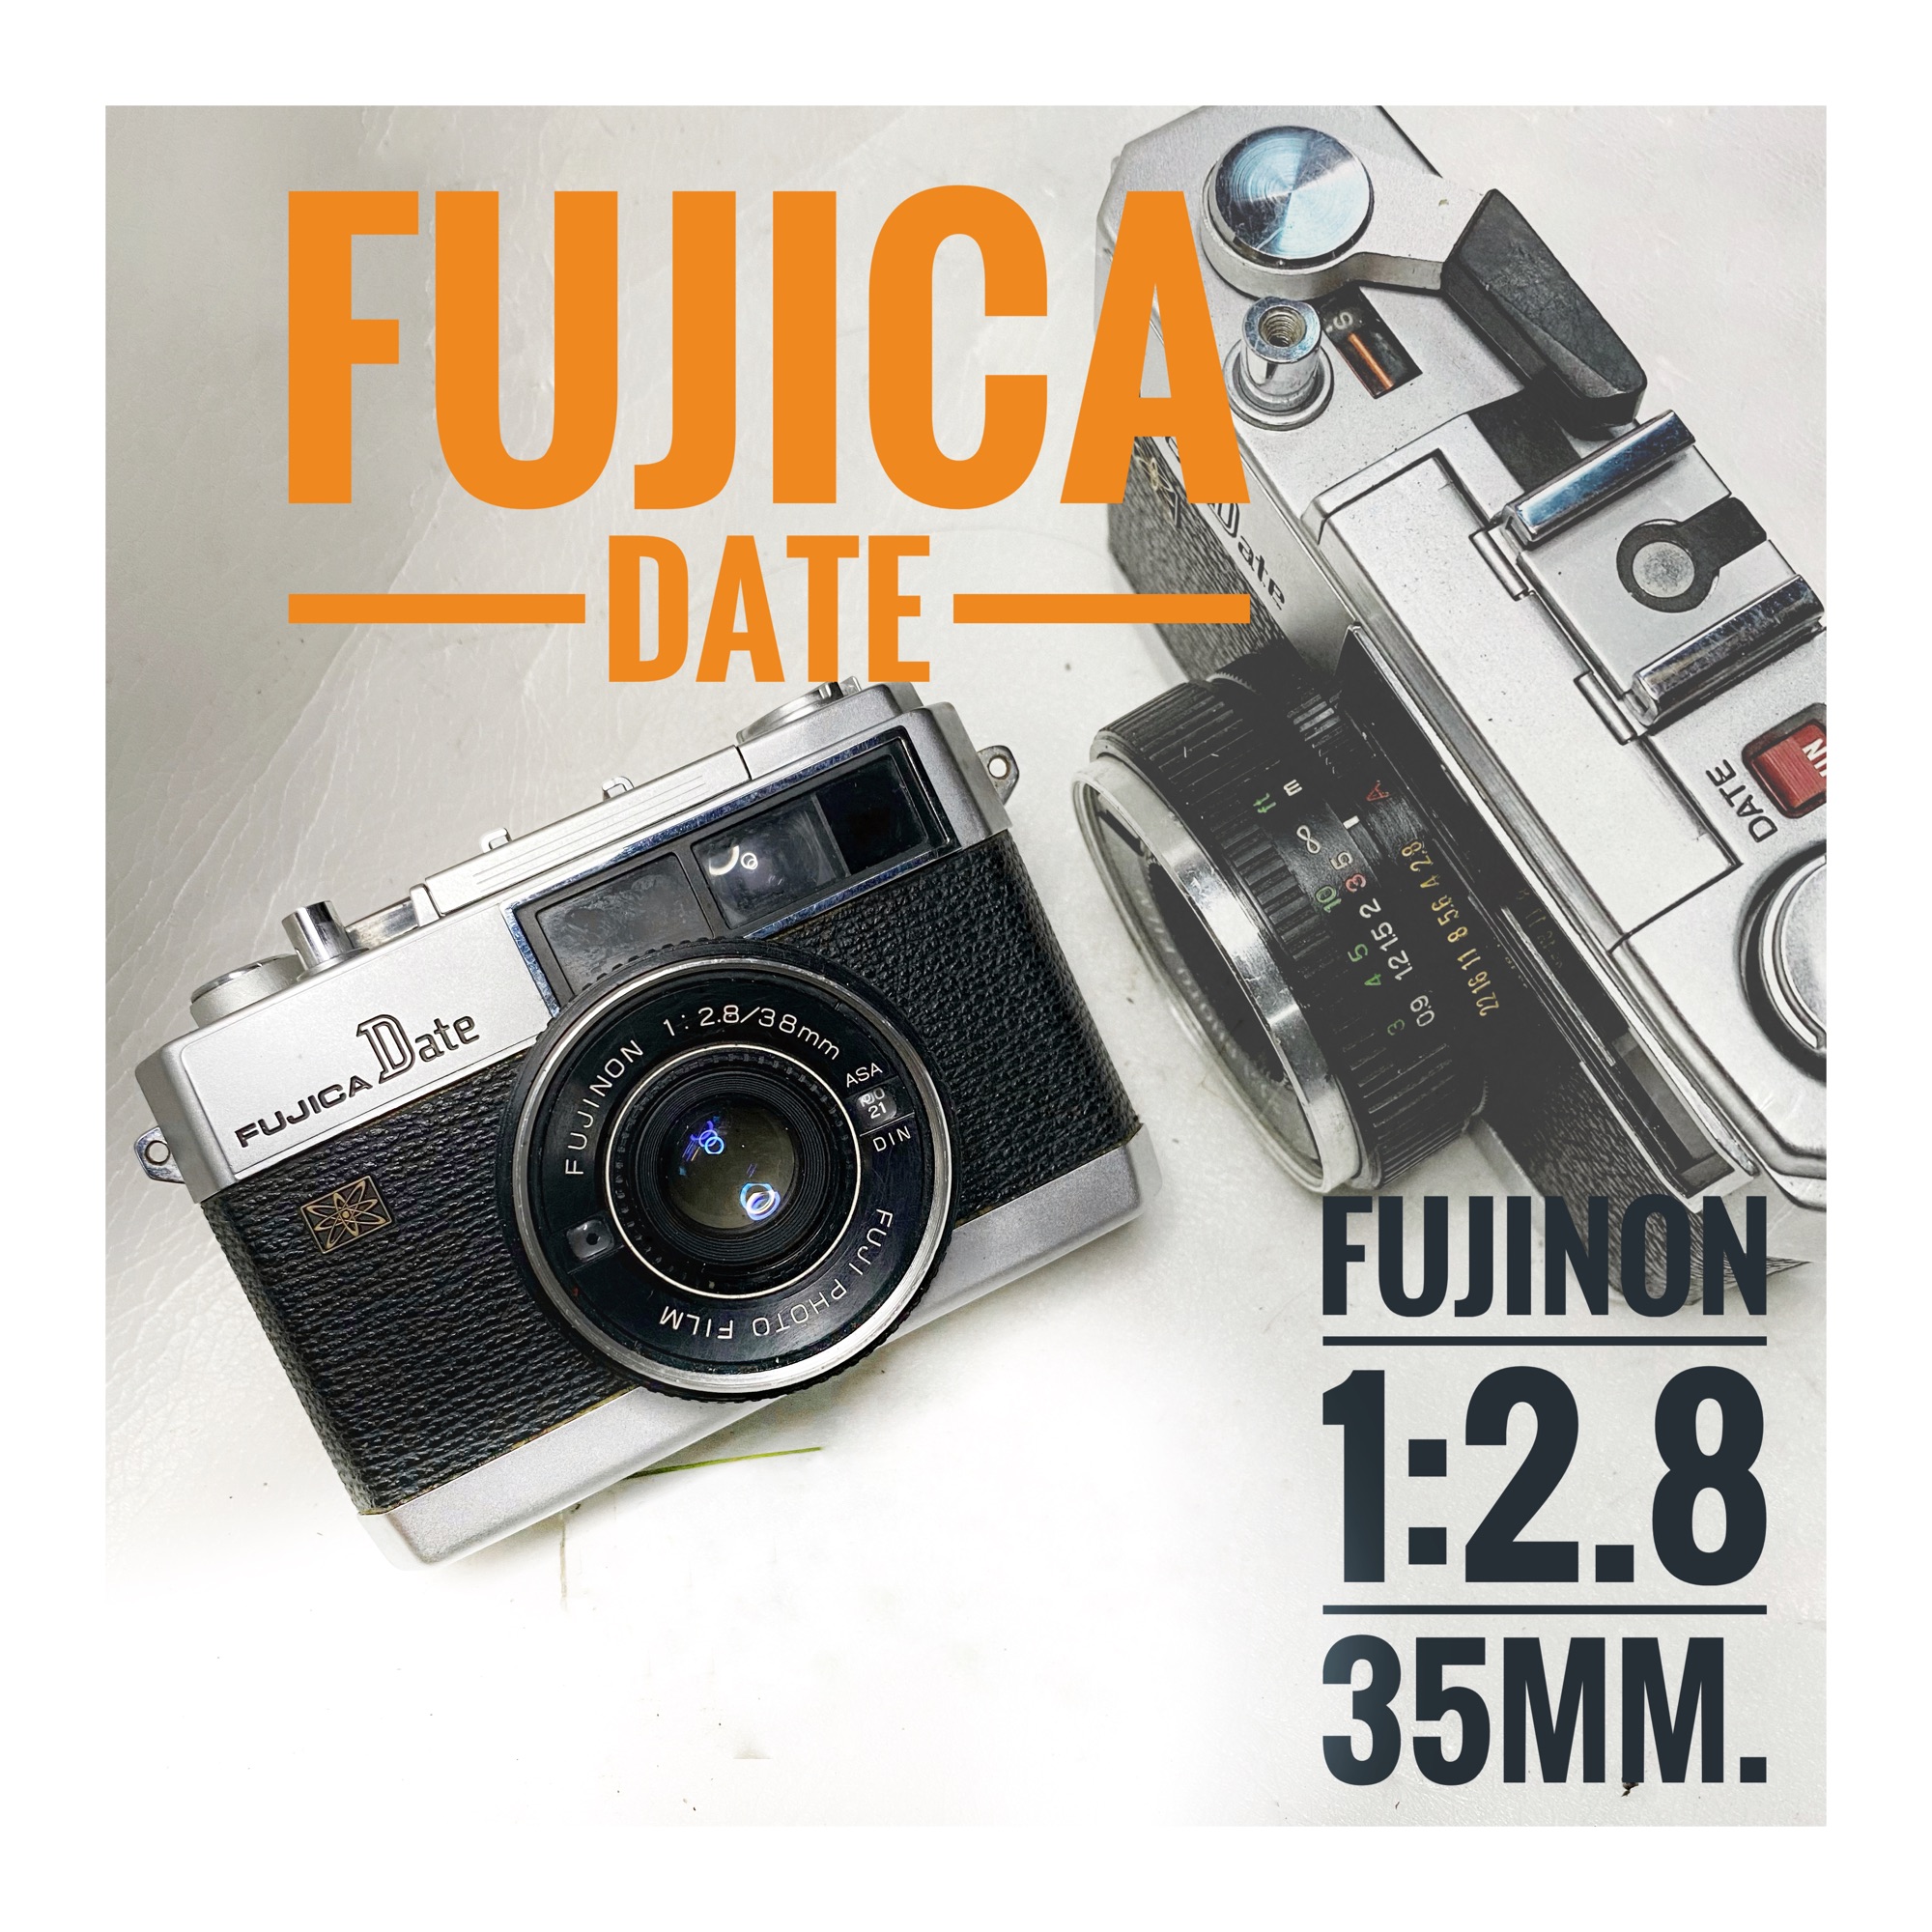 กล้องฟิล์ม Fujica Date